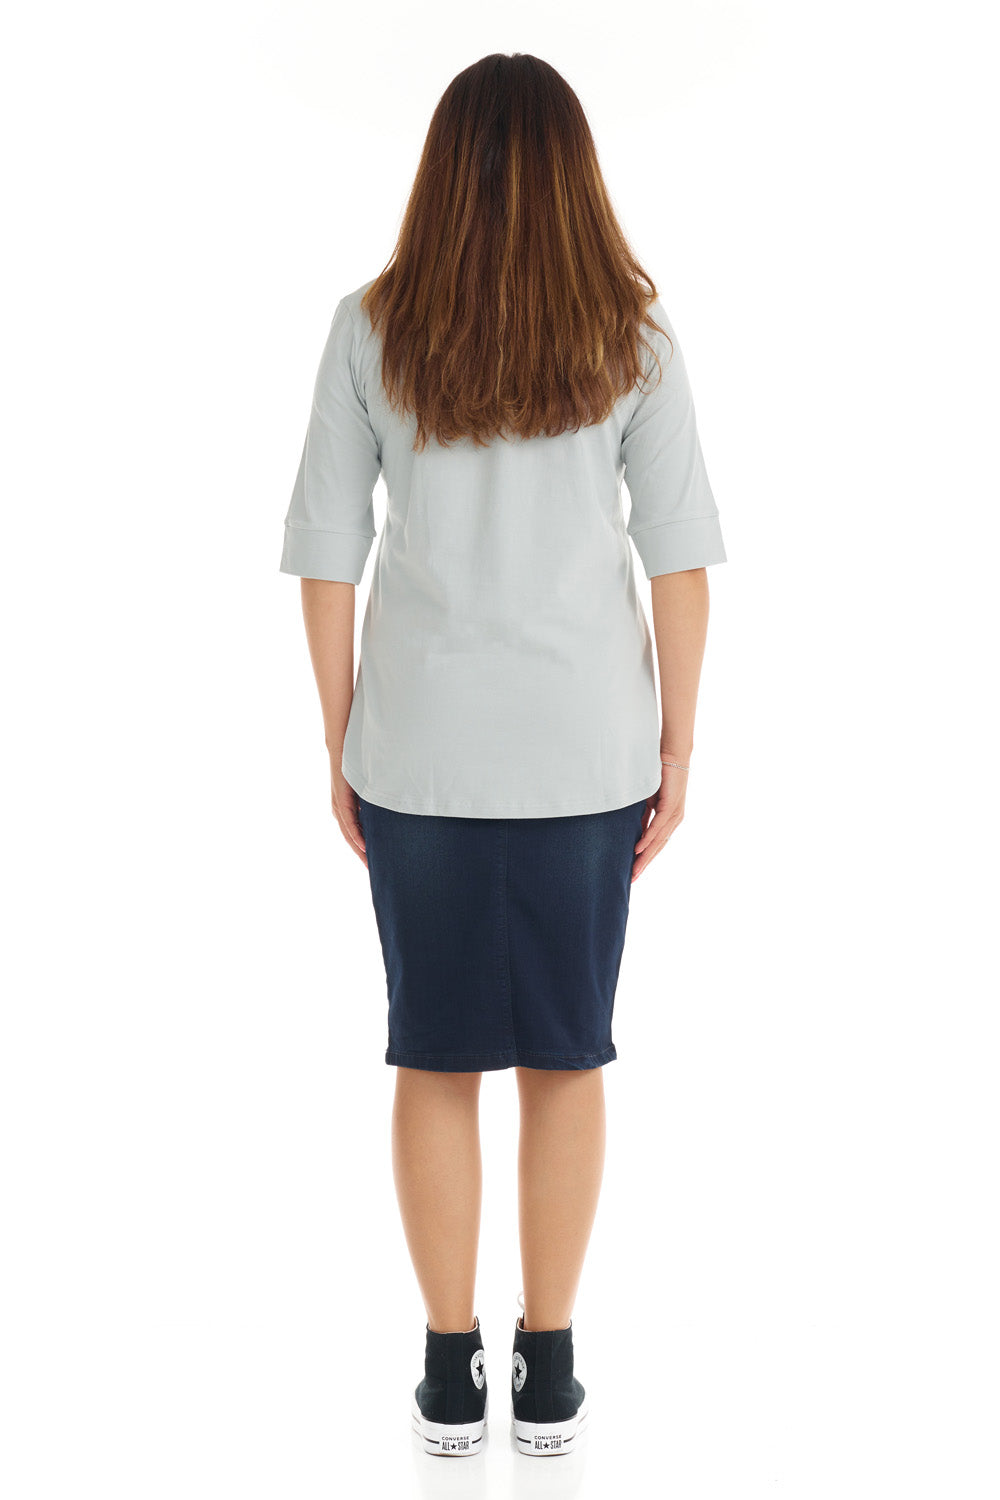 gray 3/4 cuff sleeve tshirt for women